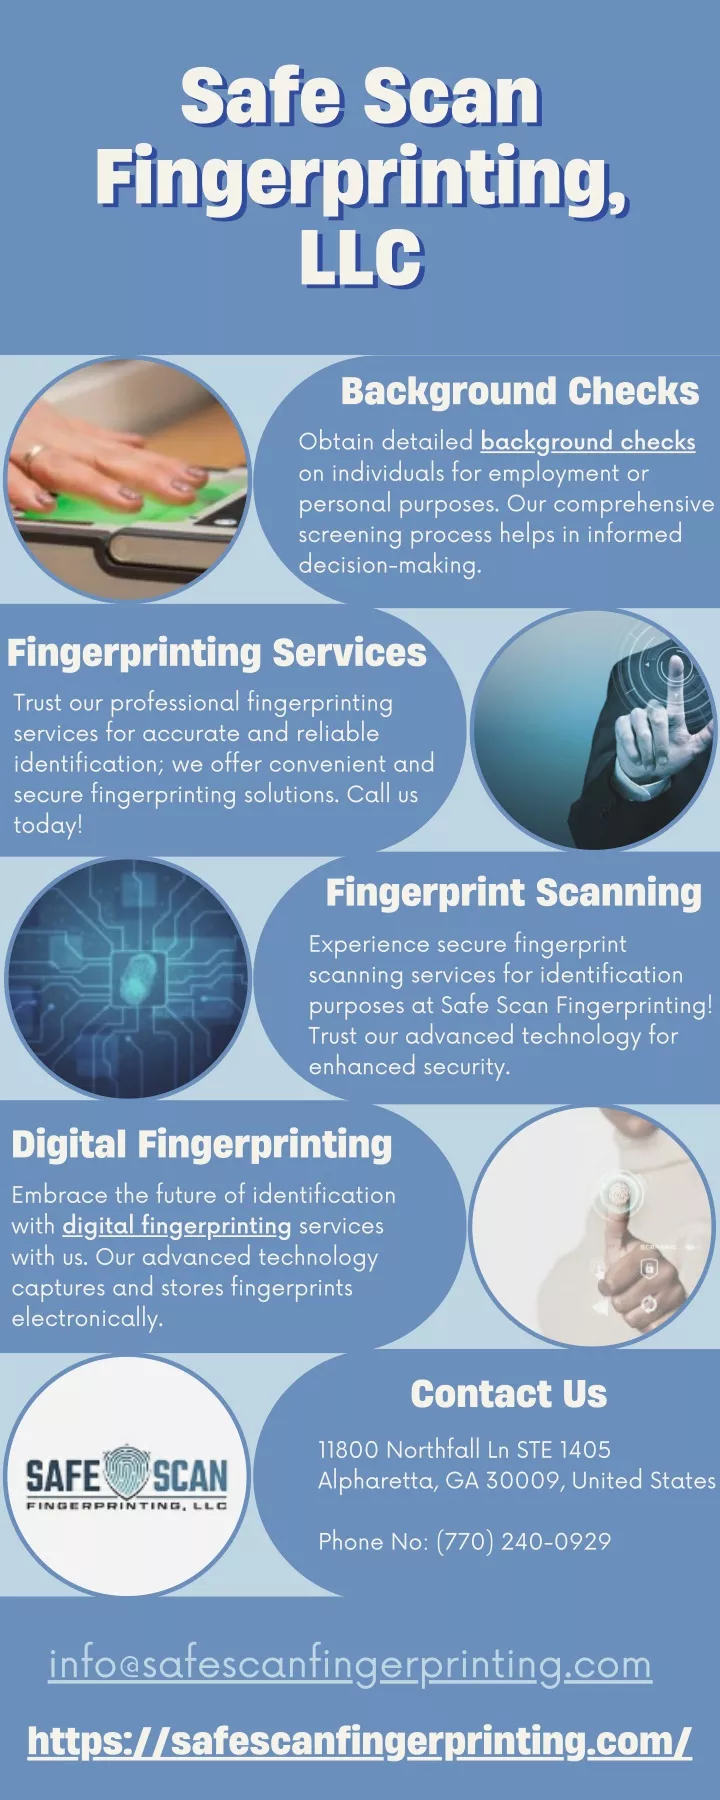 safe scan safe scan fingerprinting fingerprinting